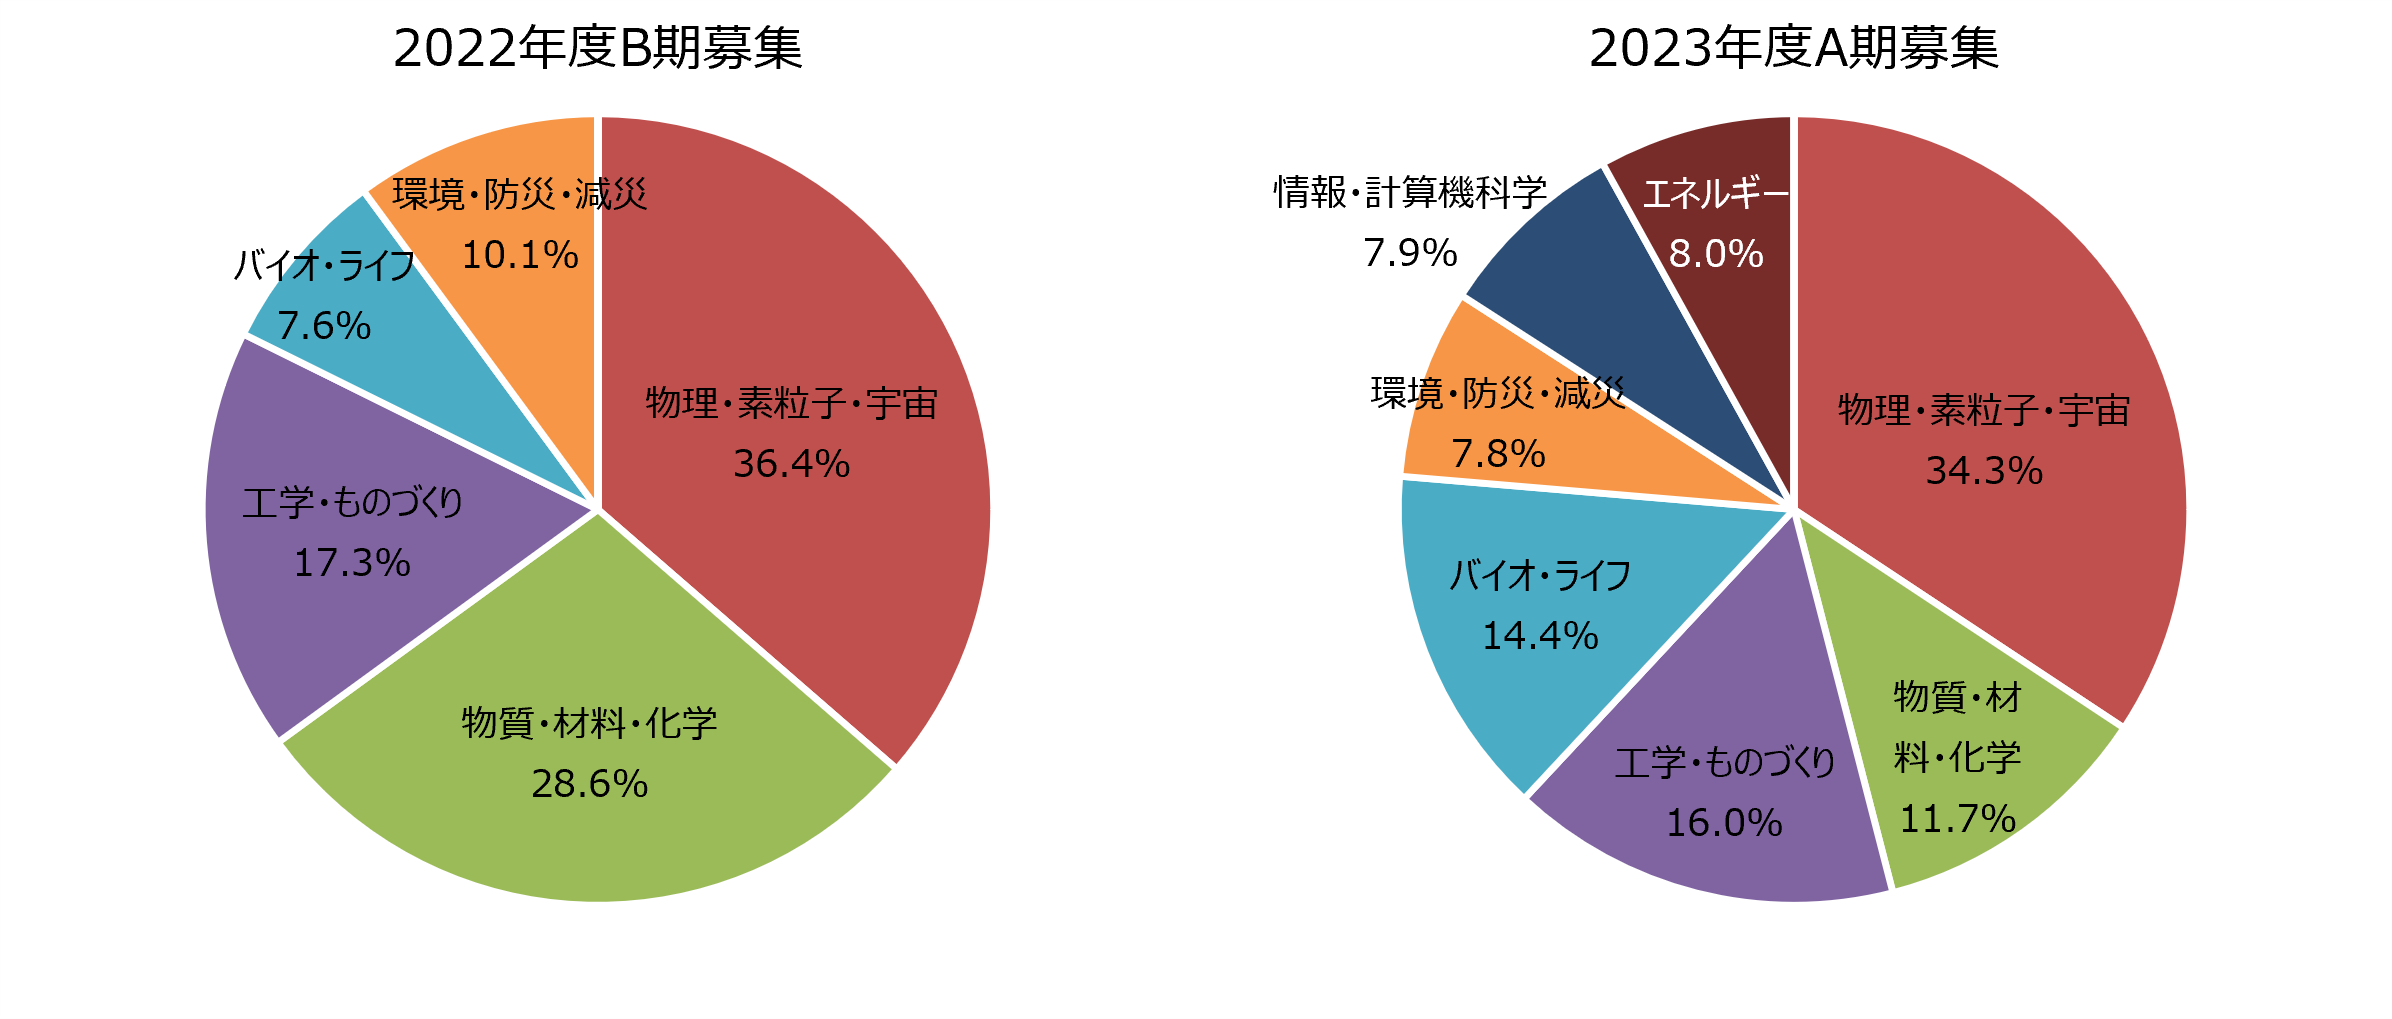 図4　分野別配分資源量比率（一般利用）［2022年度B期募集、2023年度A期募集］